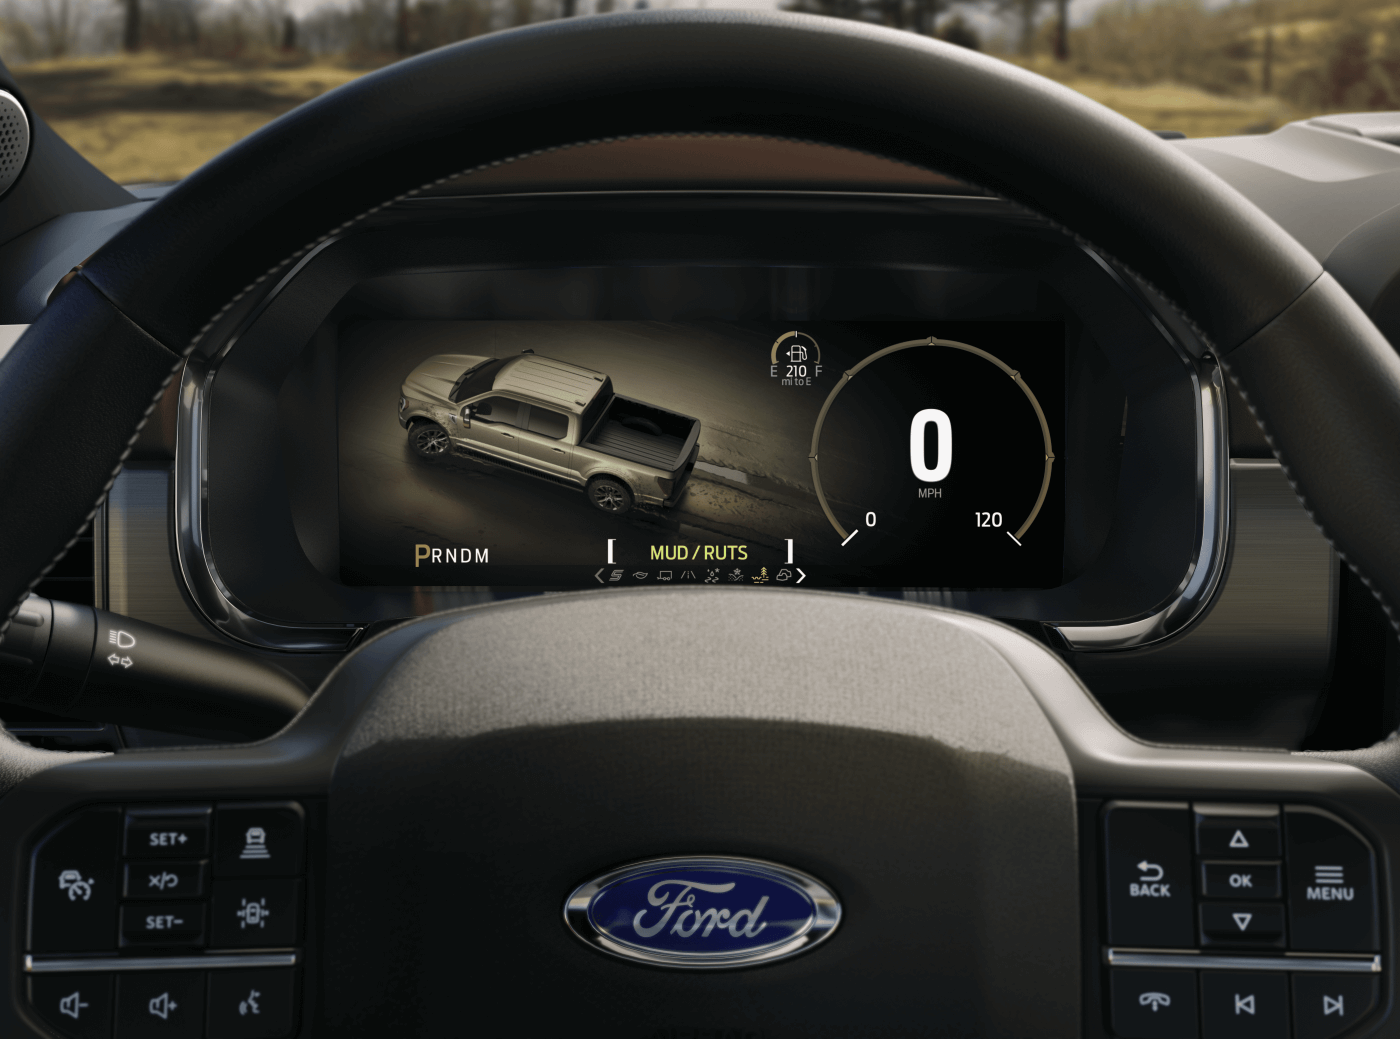 2021 Ford F-150 Dashboard